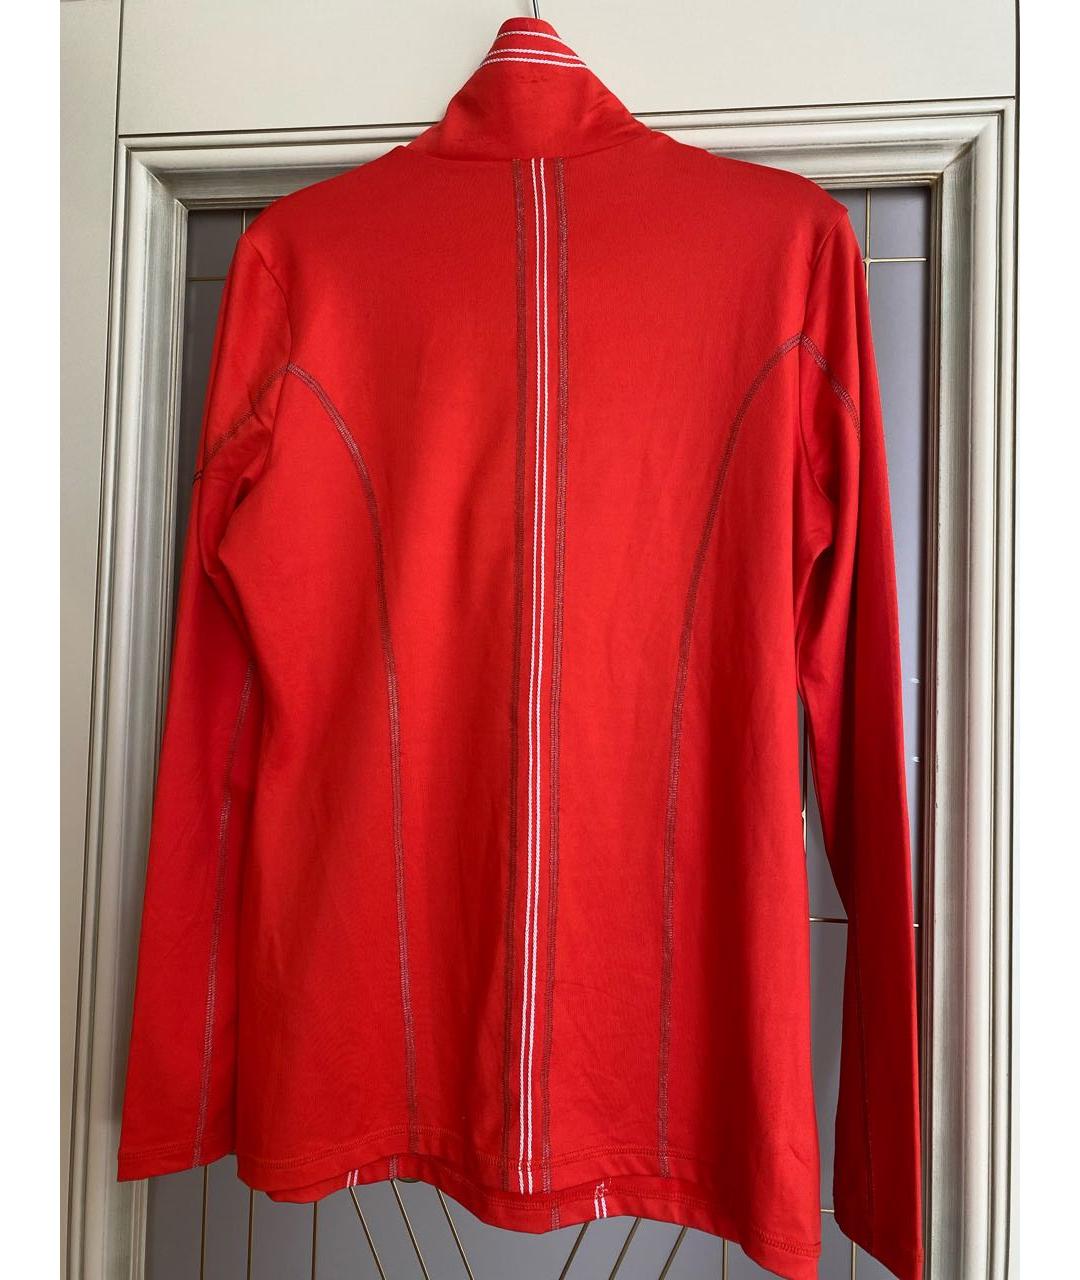 SPORTALM Красная полиамидовая спортивная куртка, фото 2